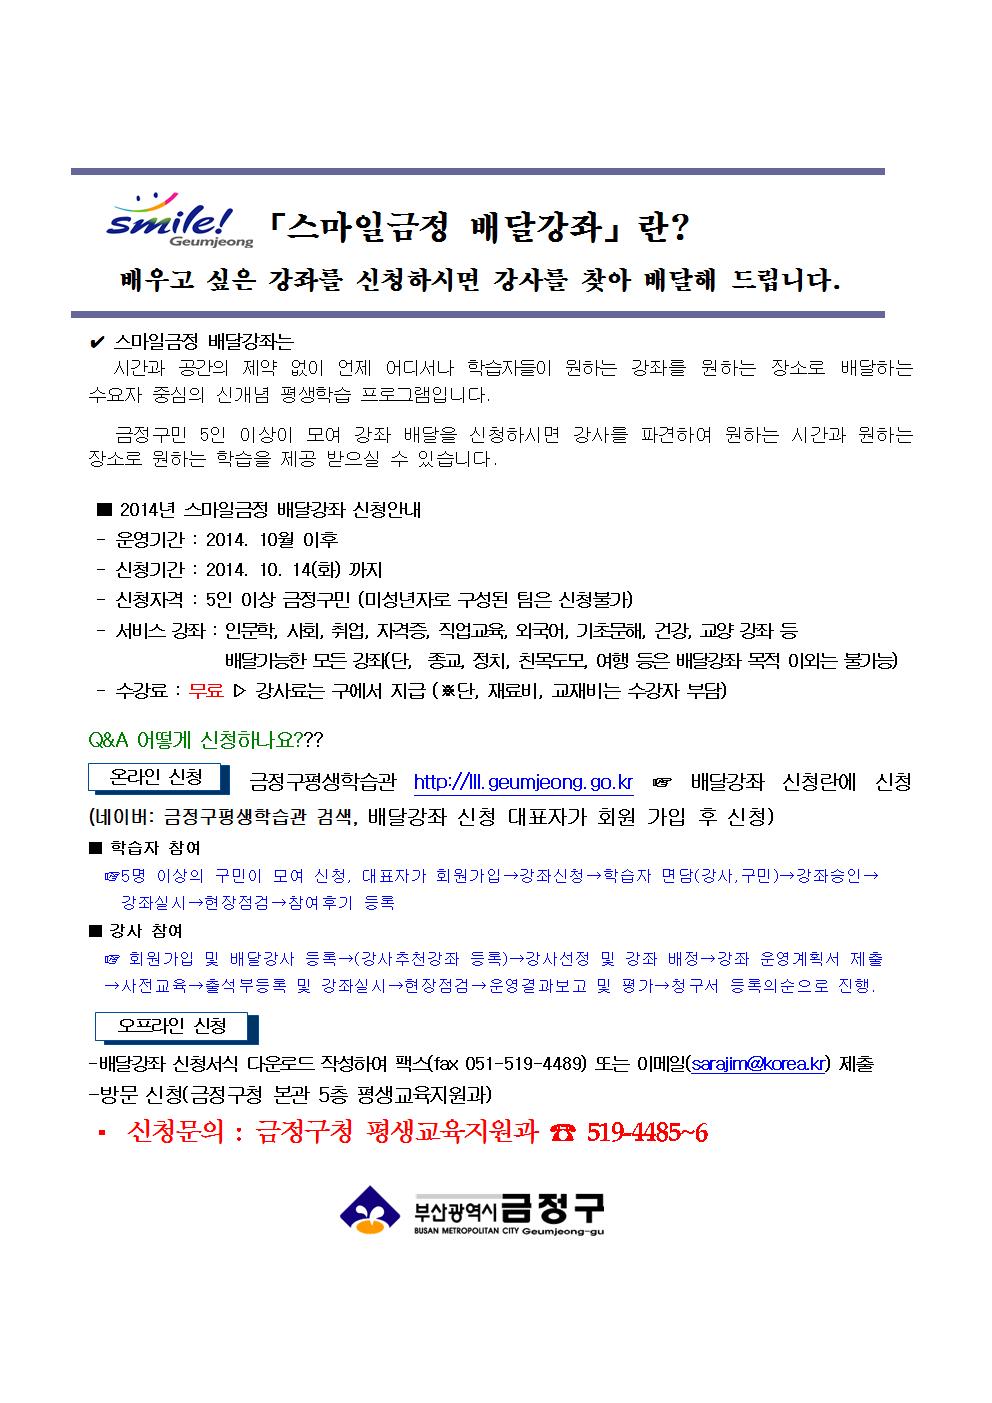 2014년 하반기 금정구 스마일배달강좌 안내(10.14마감)